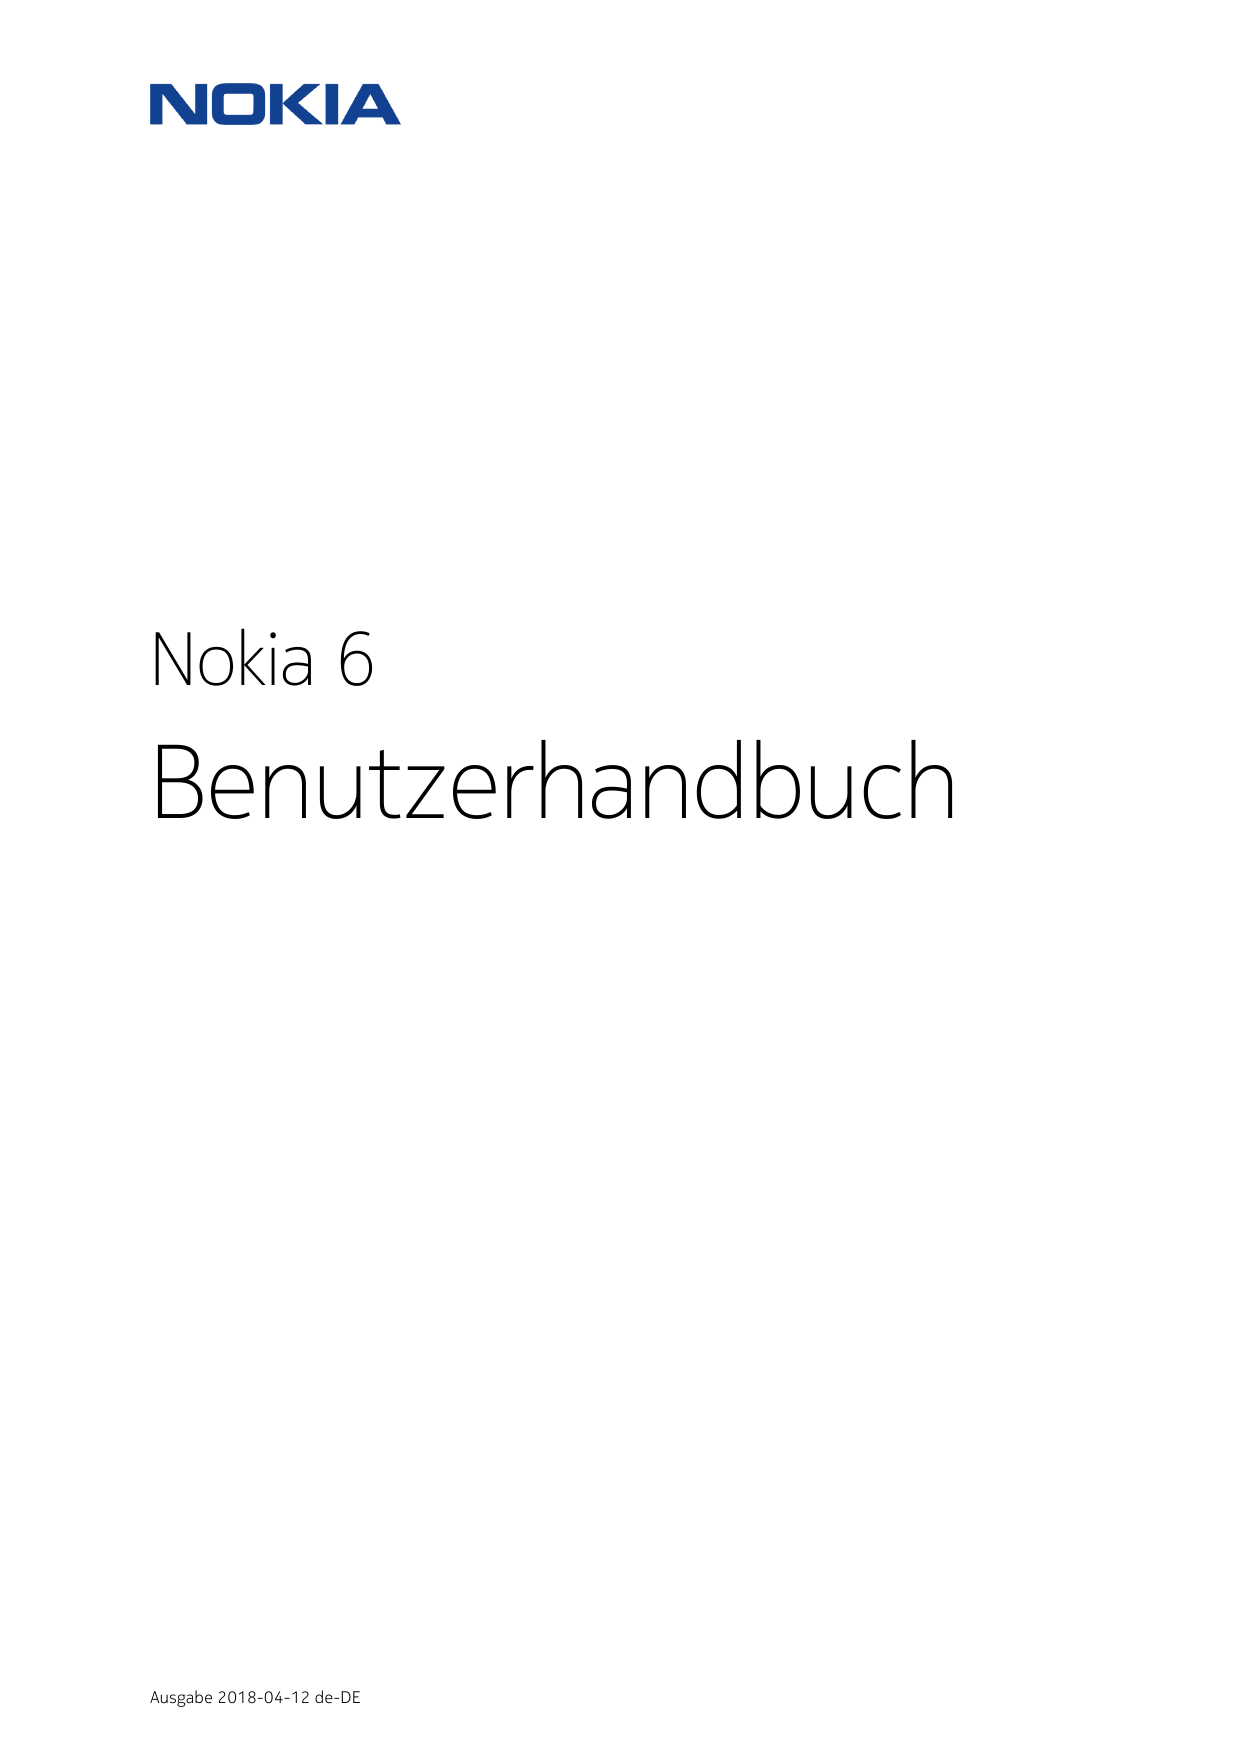 Nokia 6BenutzerhandbuchAusgabe 2018-04-12 de-DE